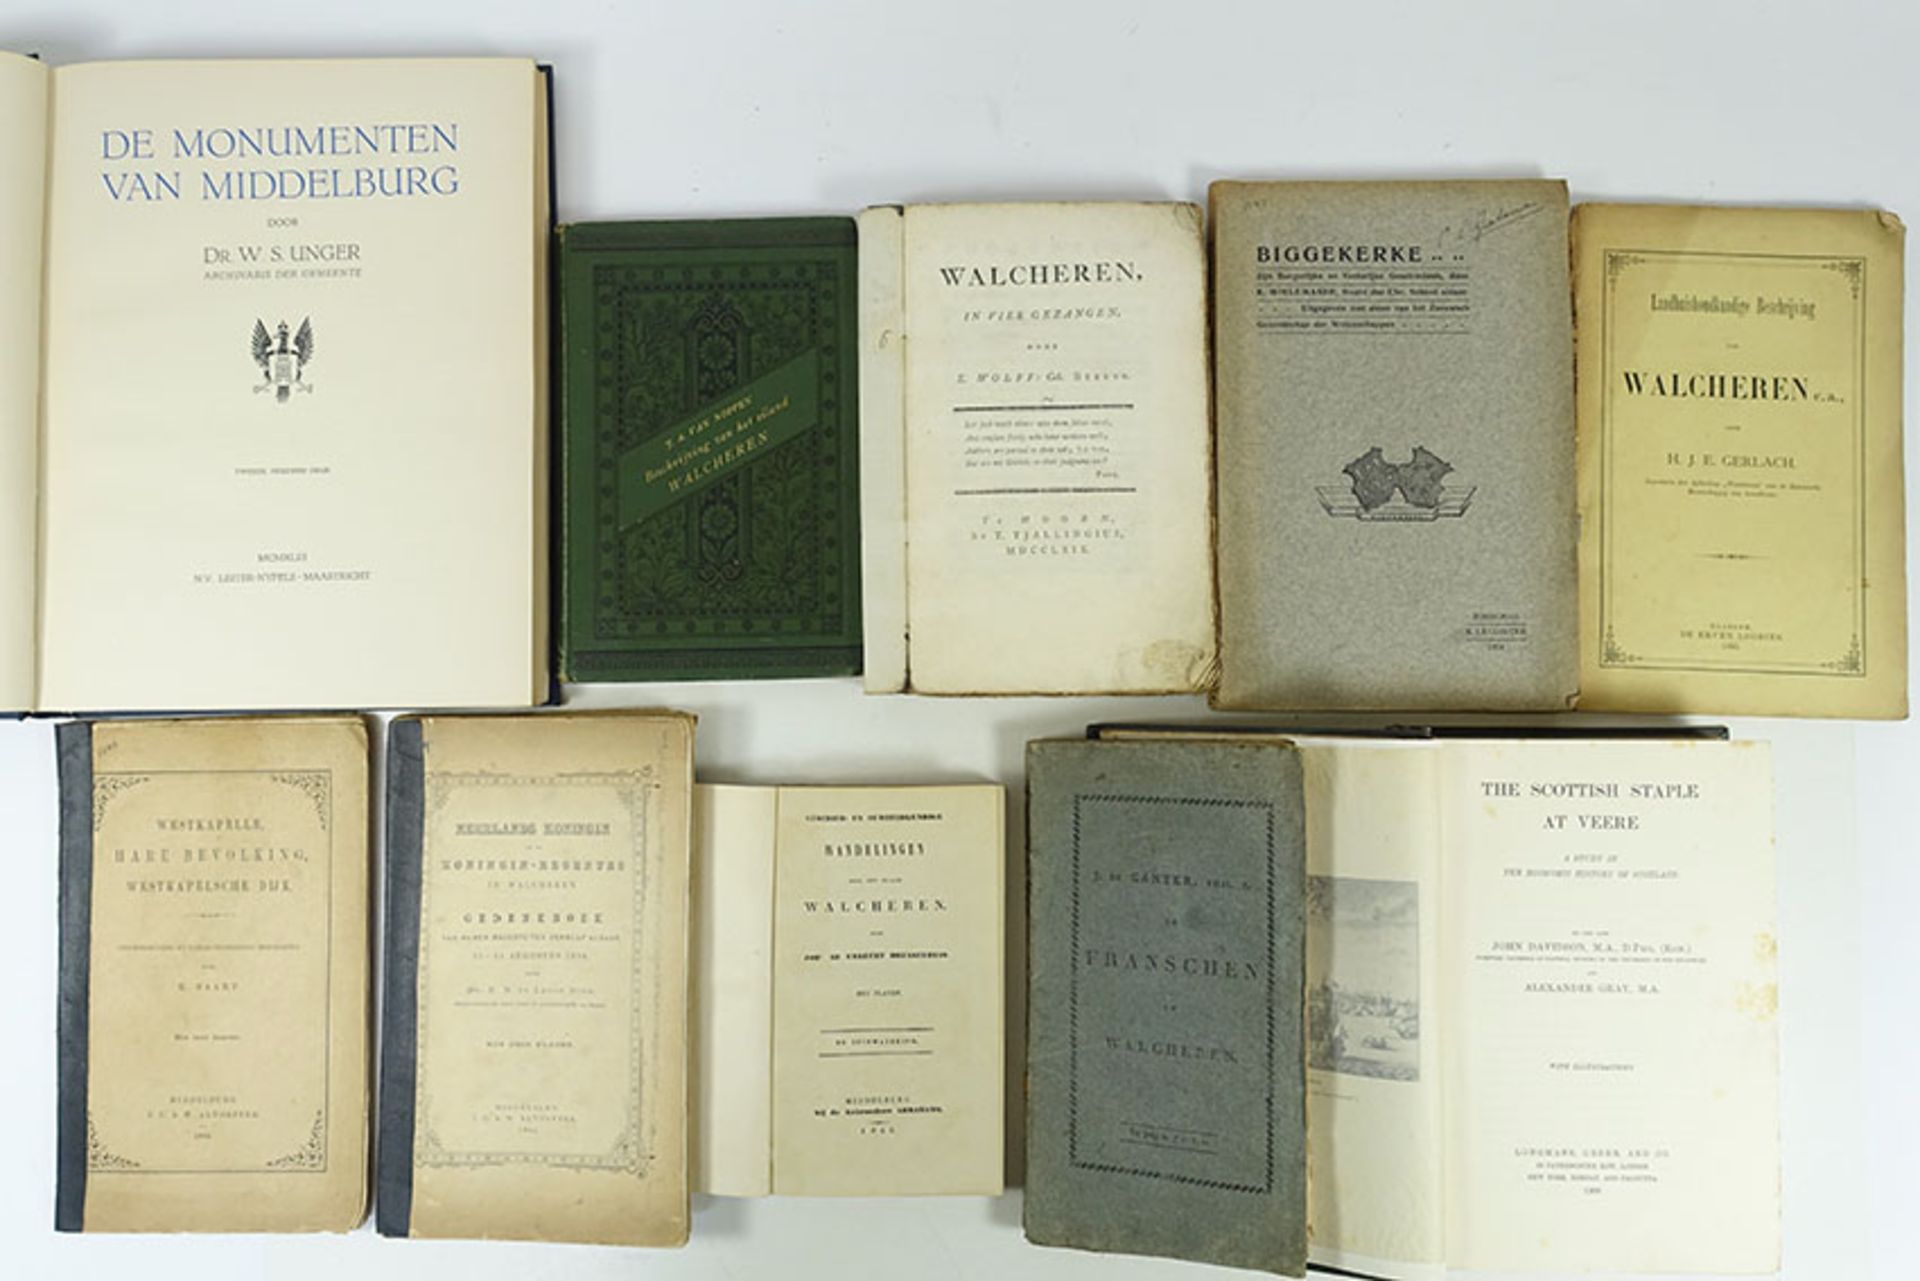 WALCHEREN -- BAART, K. Westkapelle, hare bevolking, Westkapelsche Dijk. 1889. W. 2 fold. maps.